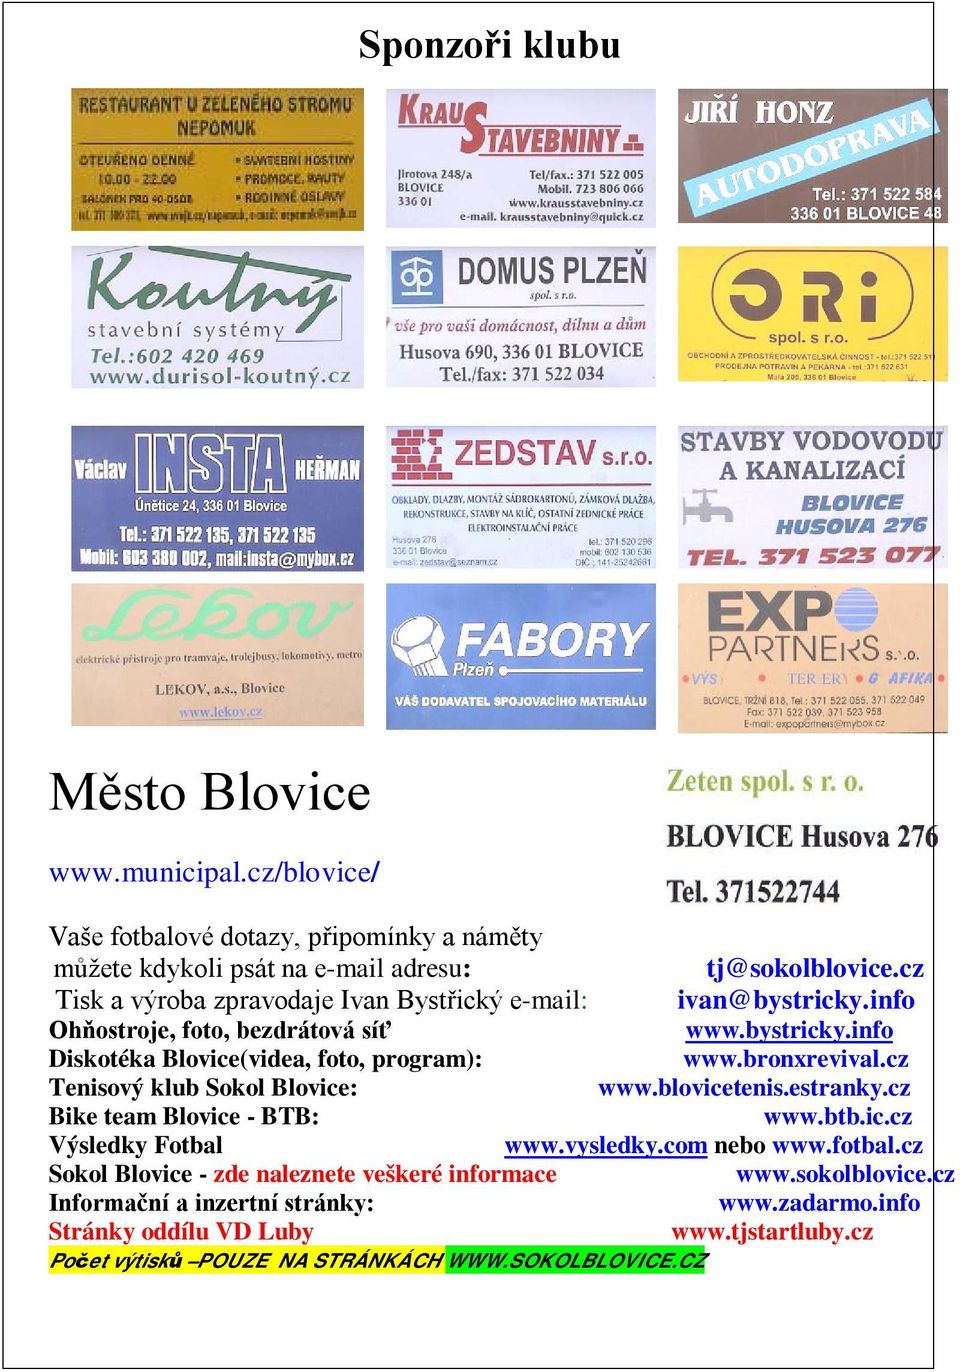 bronxrevival.cz Tenisový klub Sokol Blovice: www.blovicetenis.estranky.cz Bike team Blovice - BTB: www.btb.ic.cz Výsledky Fotbal www.vysledky.com nebo www.fotbal.